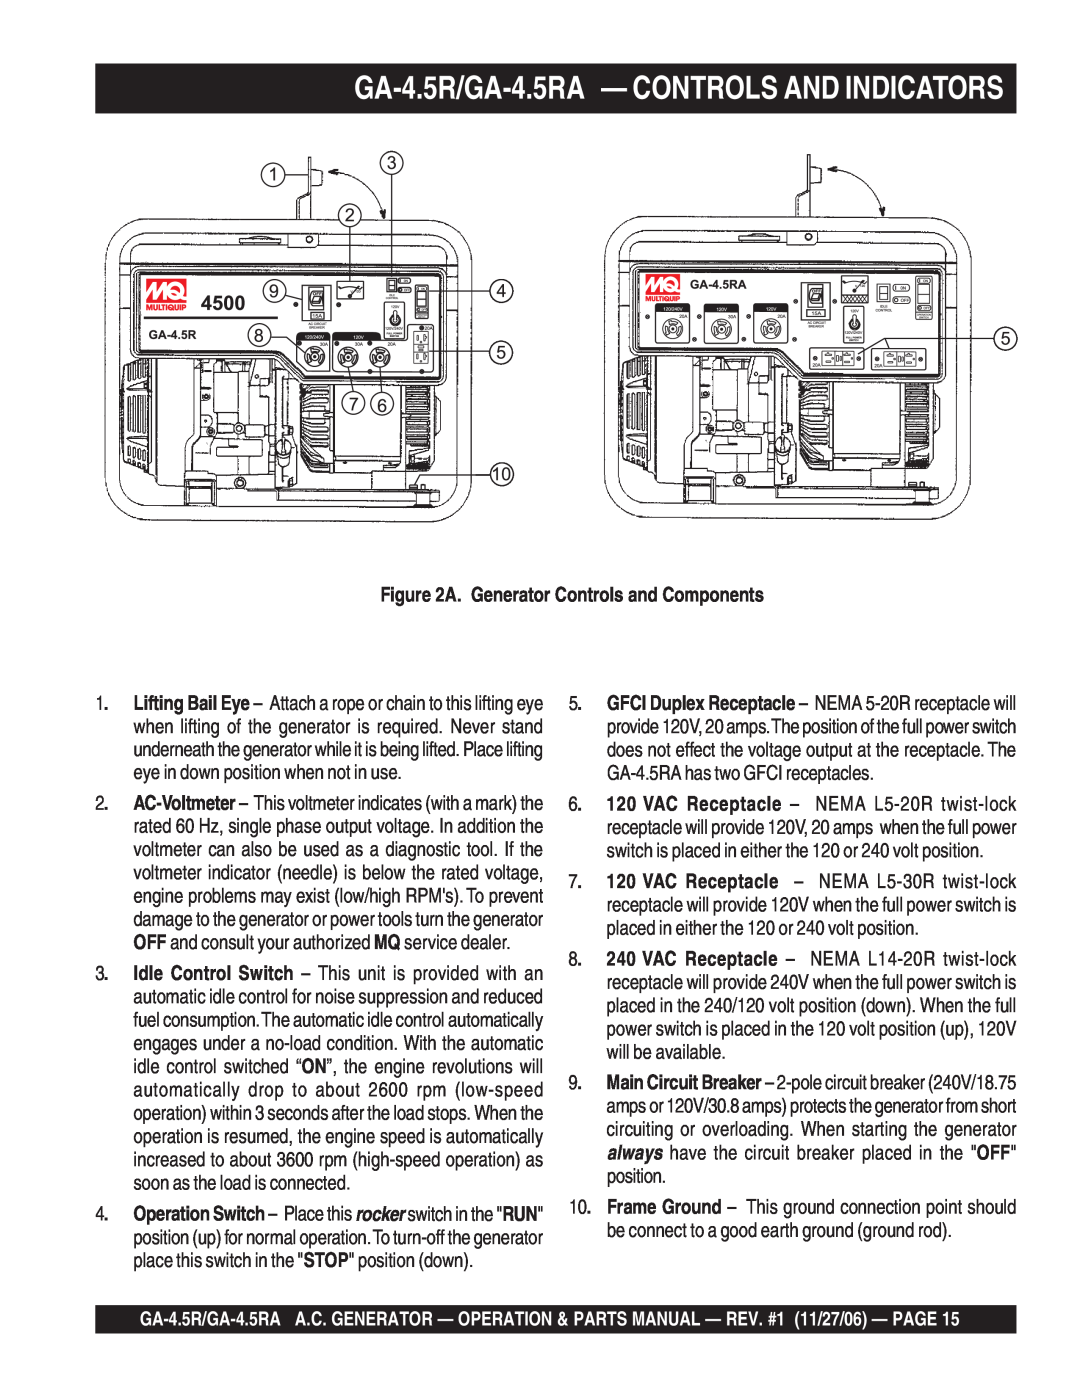 Multiquip GA4.5RA manual GA-4.5R/GA-4.5RA - CONTROLS AND INDICATORS, A. Generator Controls and Components 